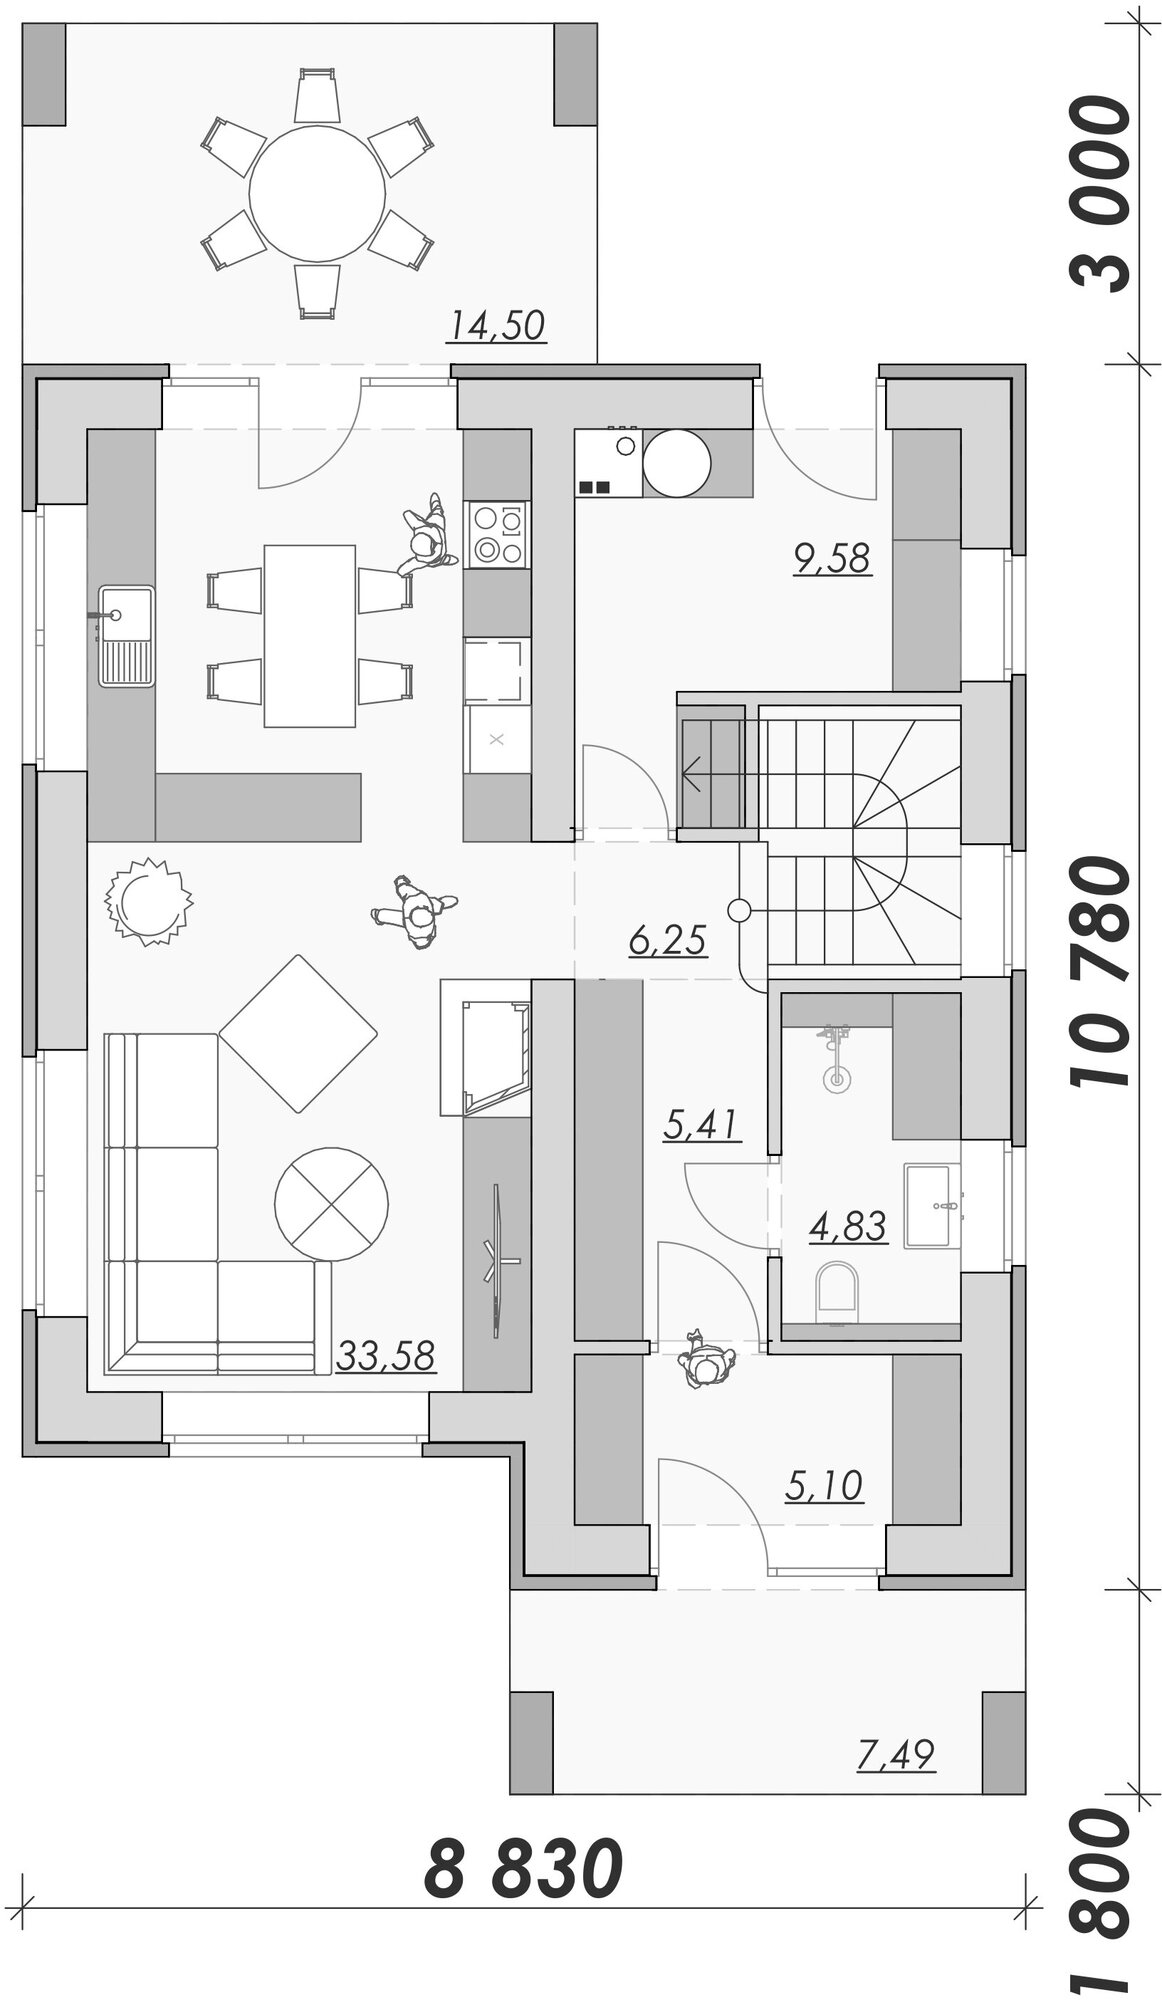 Проект двухэтажного дома в стиле Райта 135 м2 с 3 спальнями, общей зоной кухни с гостиной, отдельной котельной и террасой на заднем дворике - фотография № 3